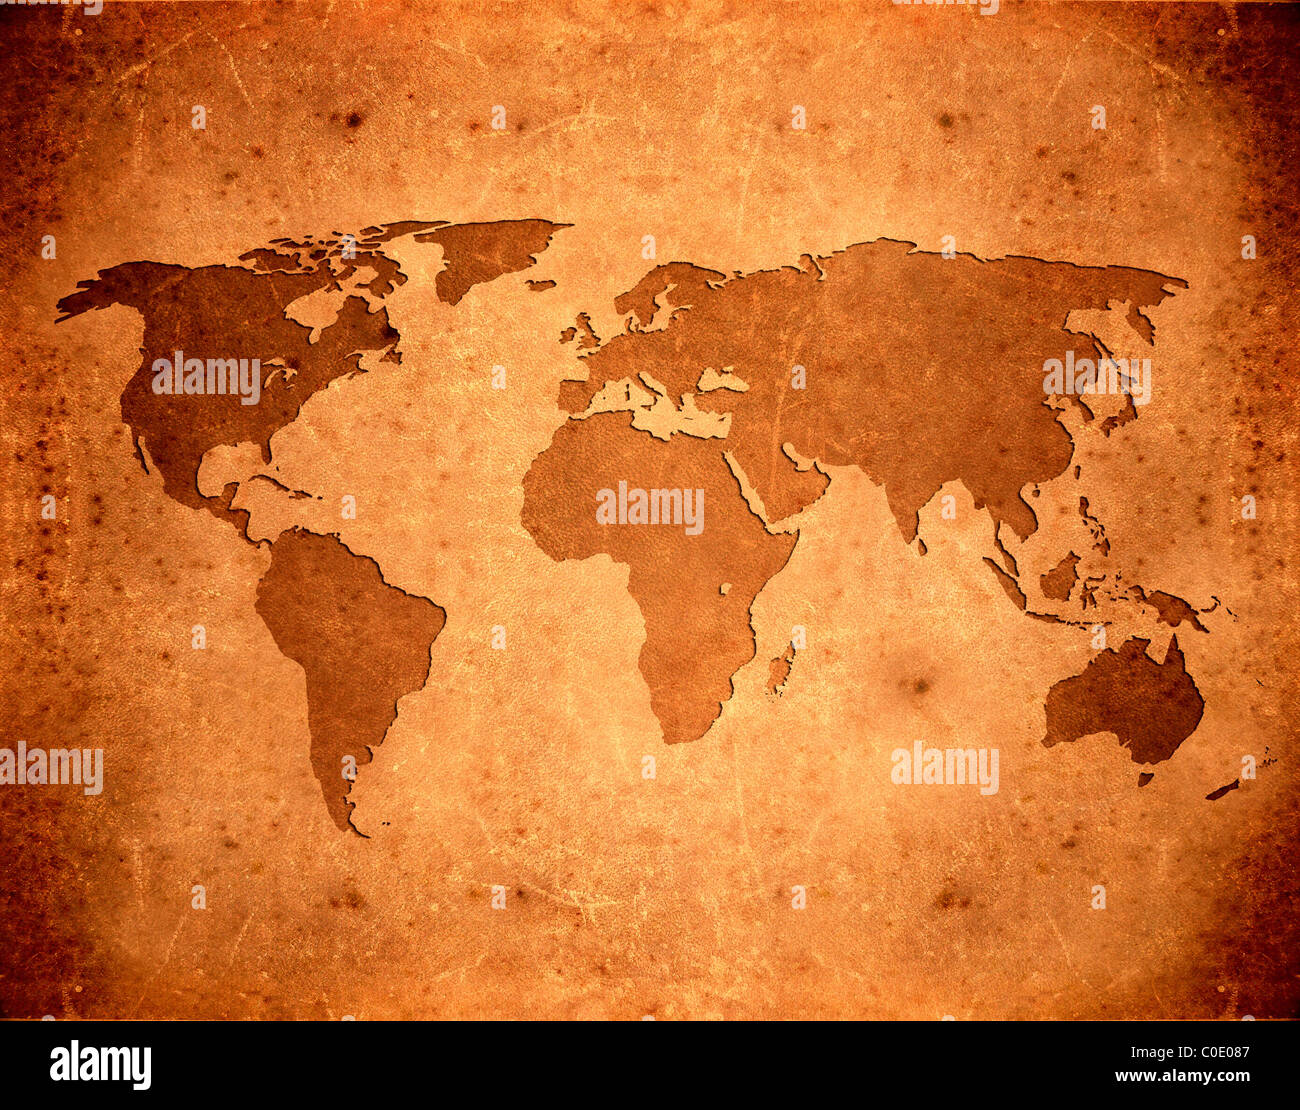 world map background Stock Photo